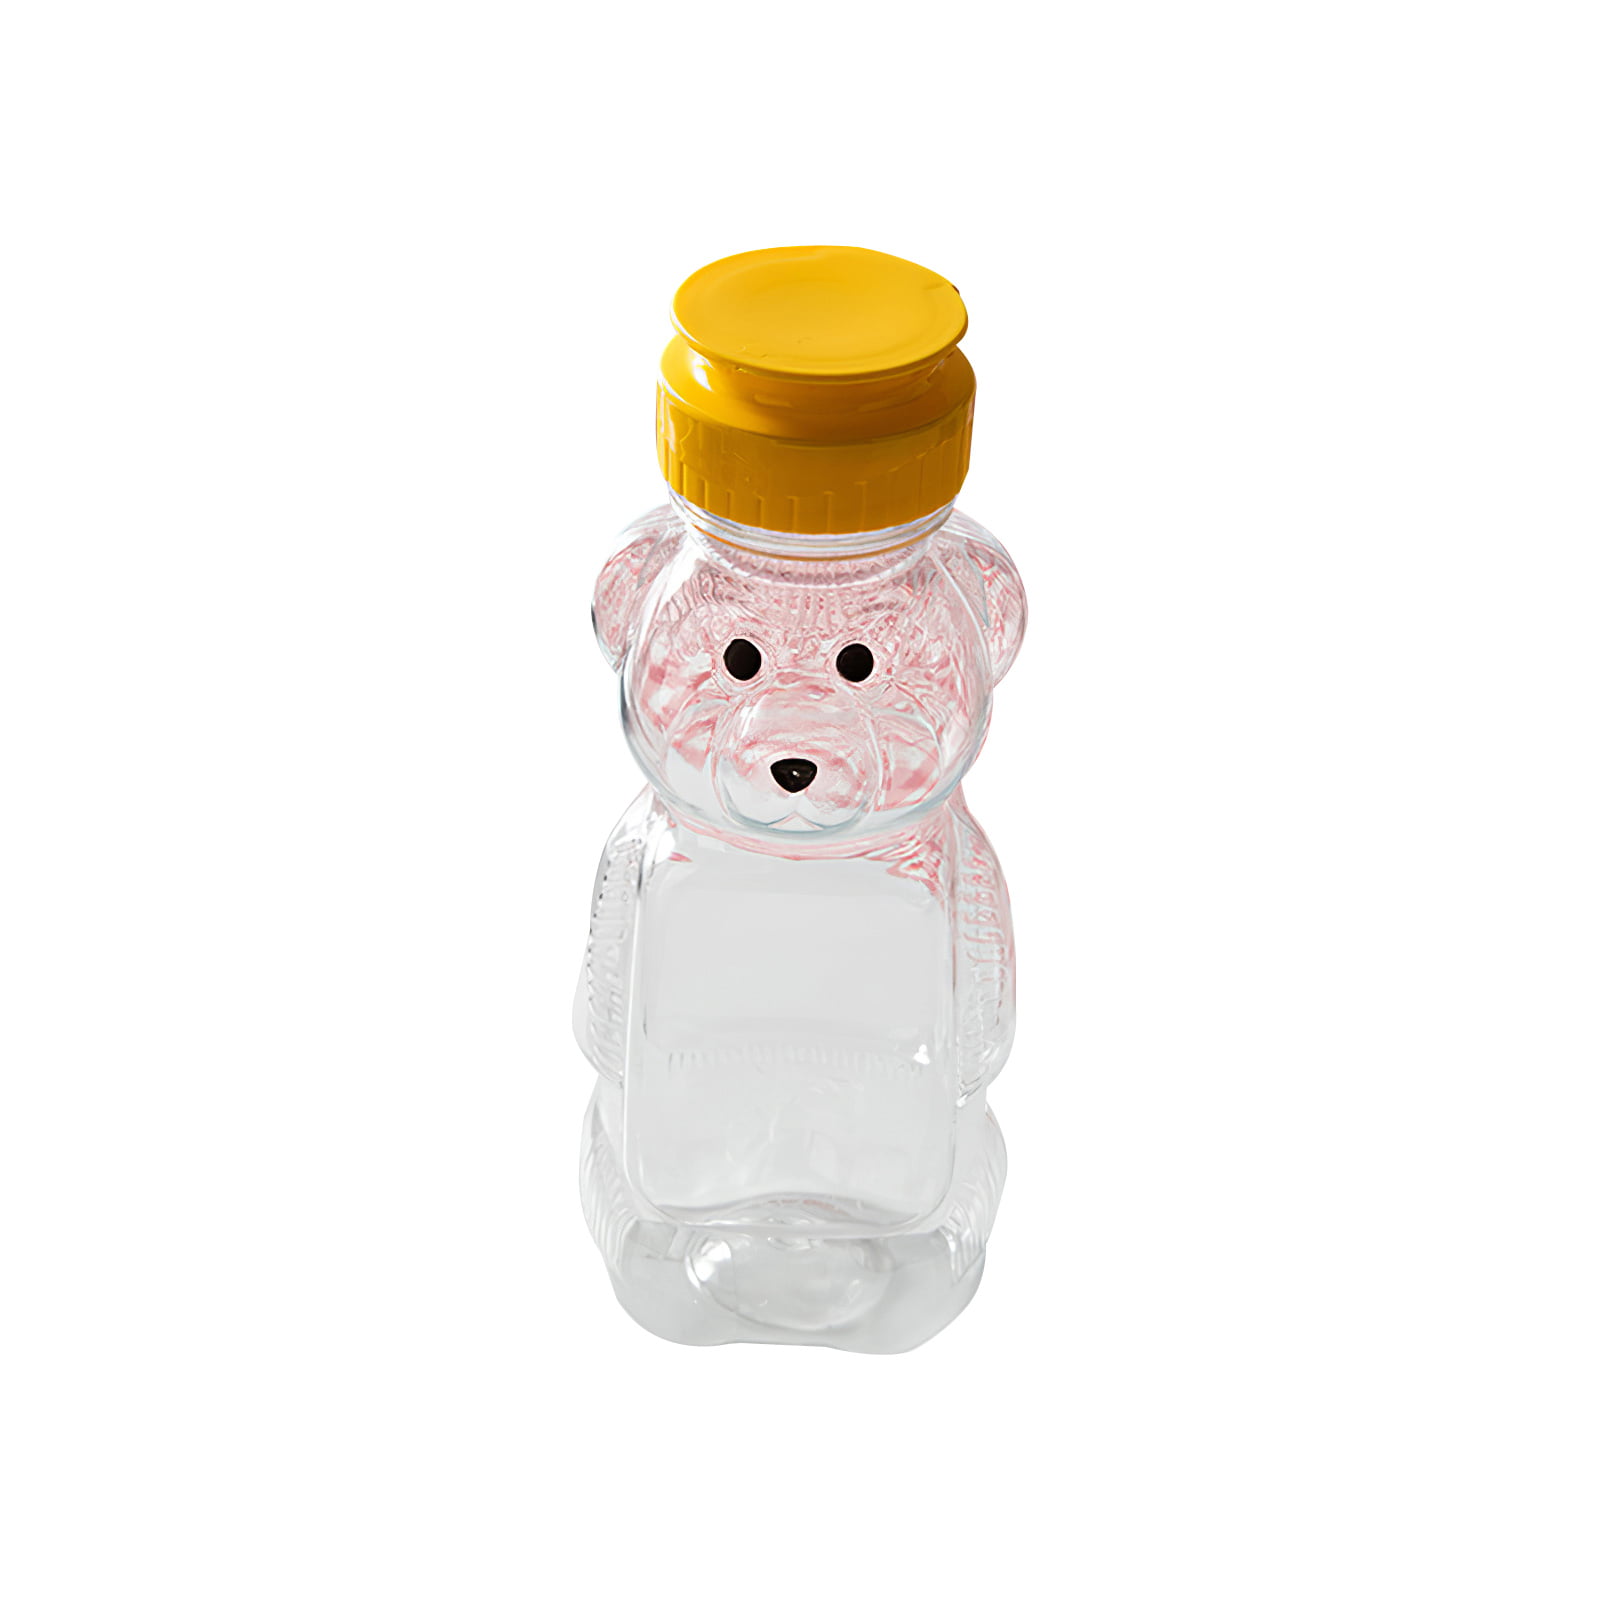 Tomatodo pequeño Magic Bear para niños. Tomatodo de plástico incluye pajita  con seguro para beber agua. Botella de plástico para llevar agua hermosos  diseño infantiles. Botella para que los niños lleven agua